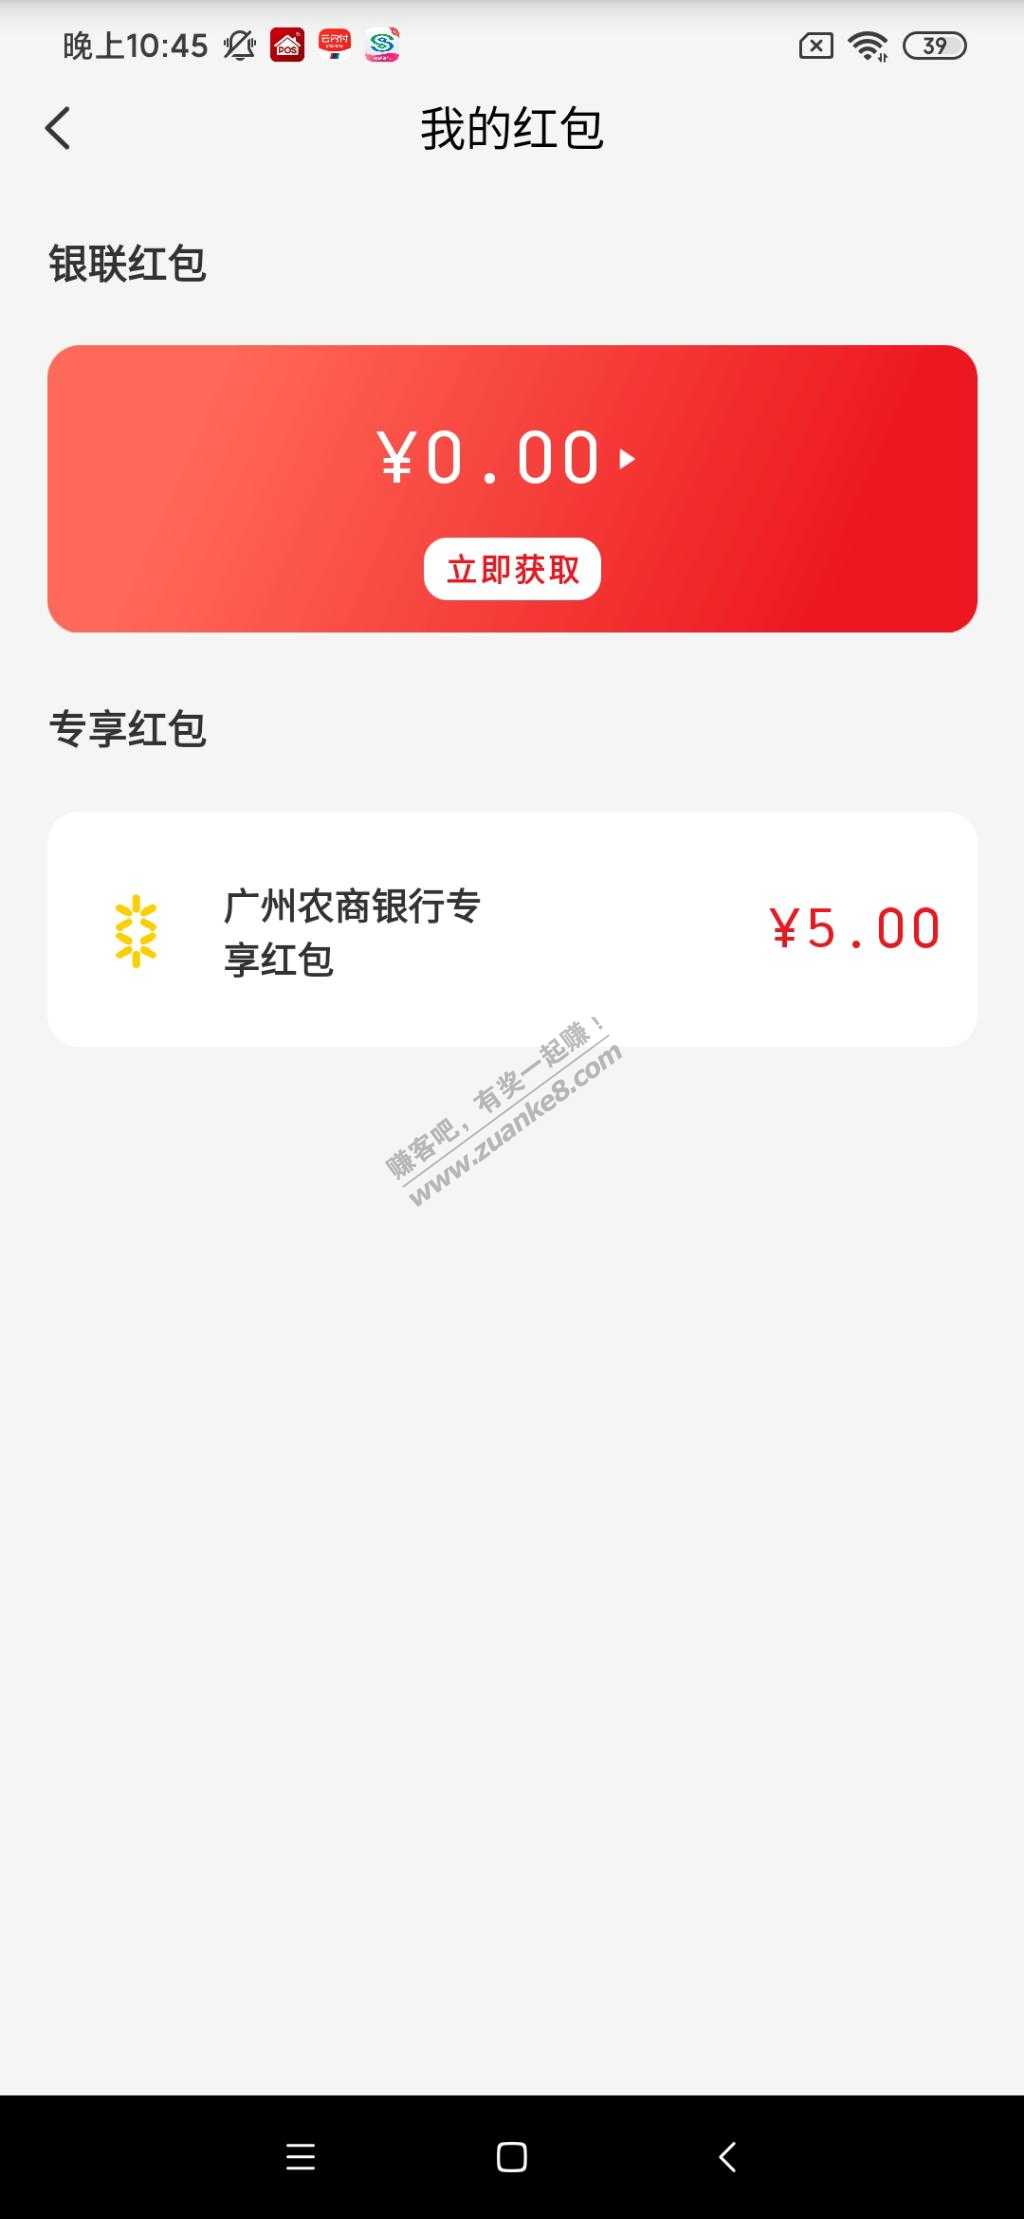 下载珠江直销银行app开卡绑定云闪付买12元毛-惠小助(52huixz.com)